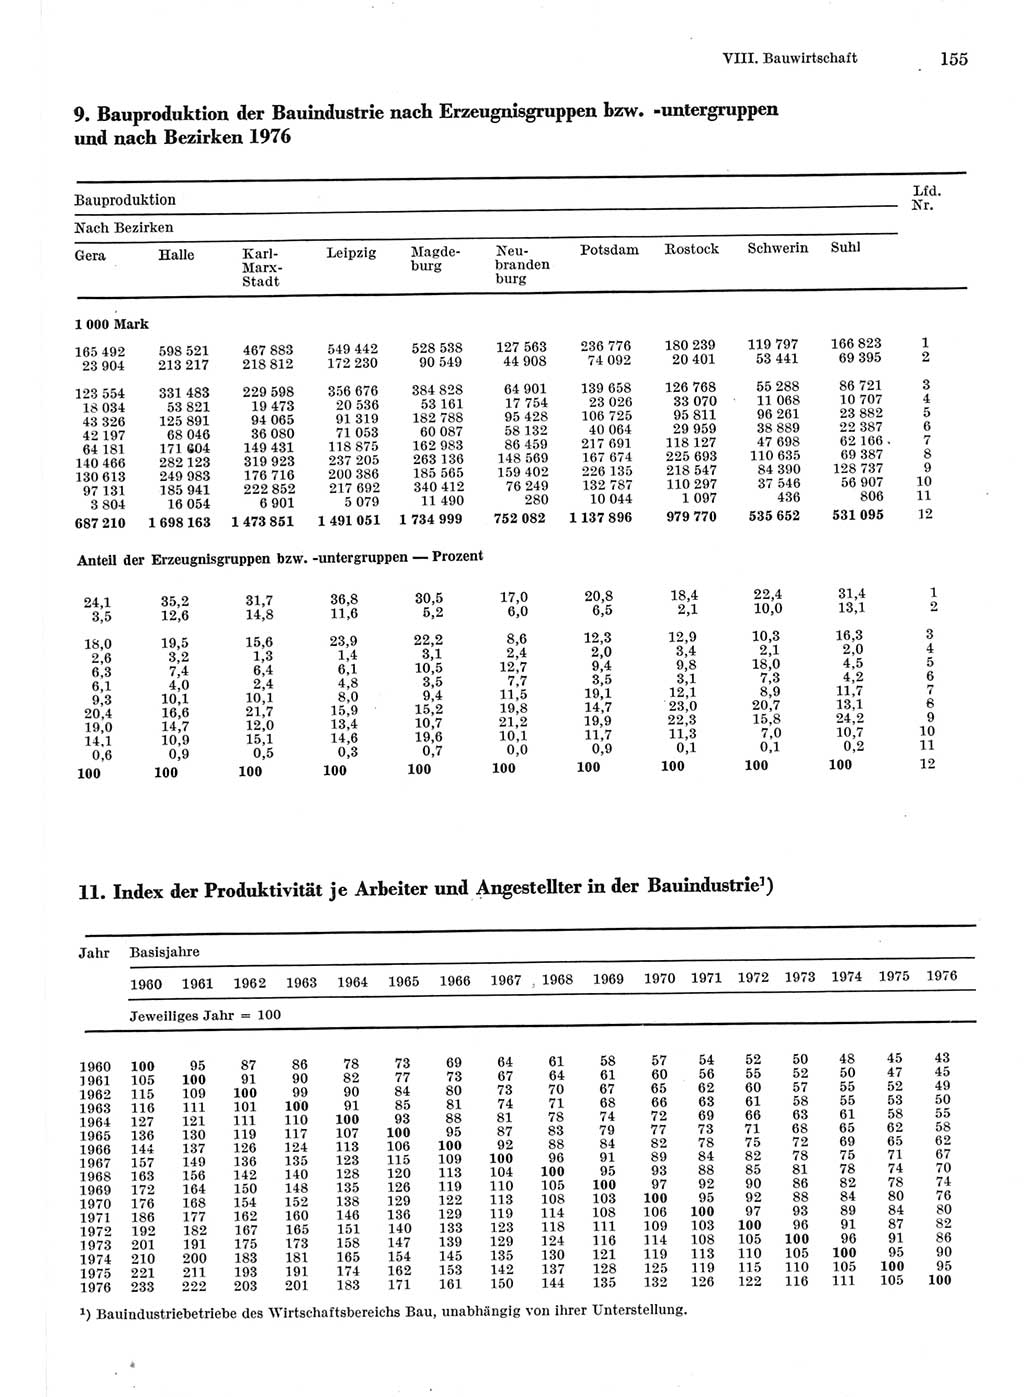 Statistisches Jahrbuch der Deutschen Demokratischen Republik (DDR) 1977, Seite 155 (Stat. Jb. DDR 1977, S. 155)